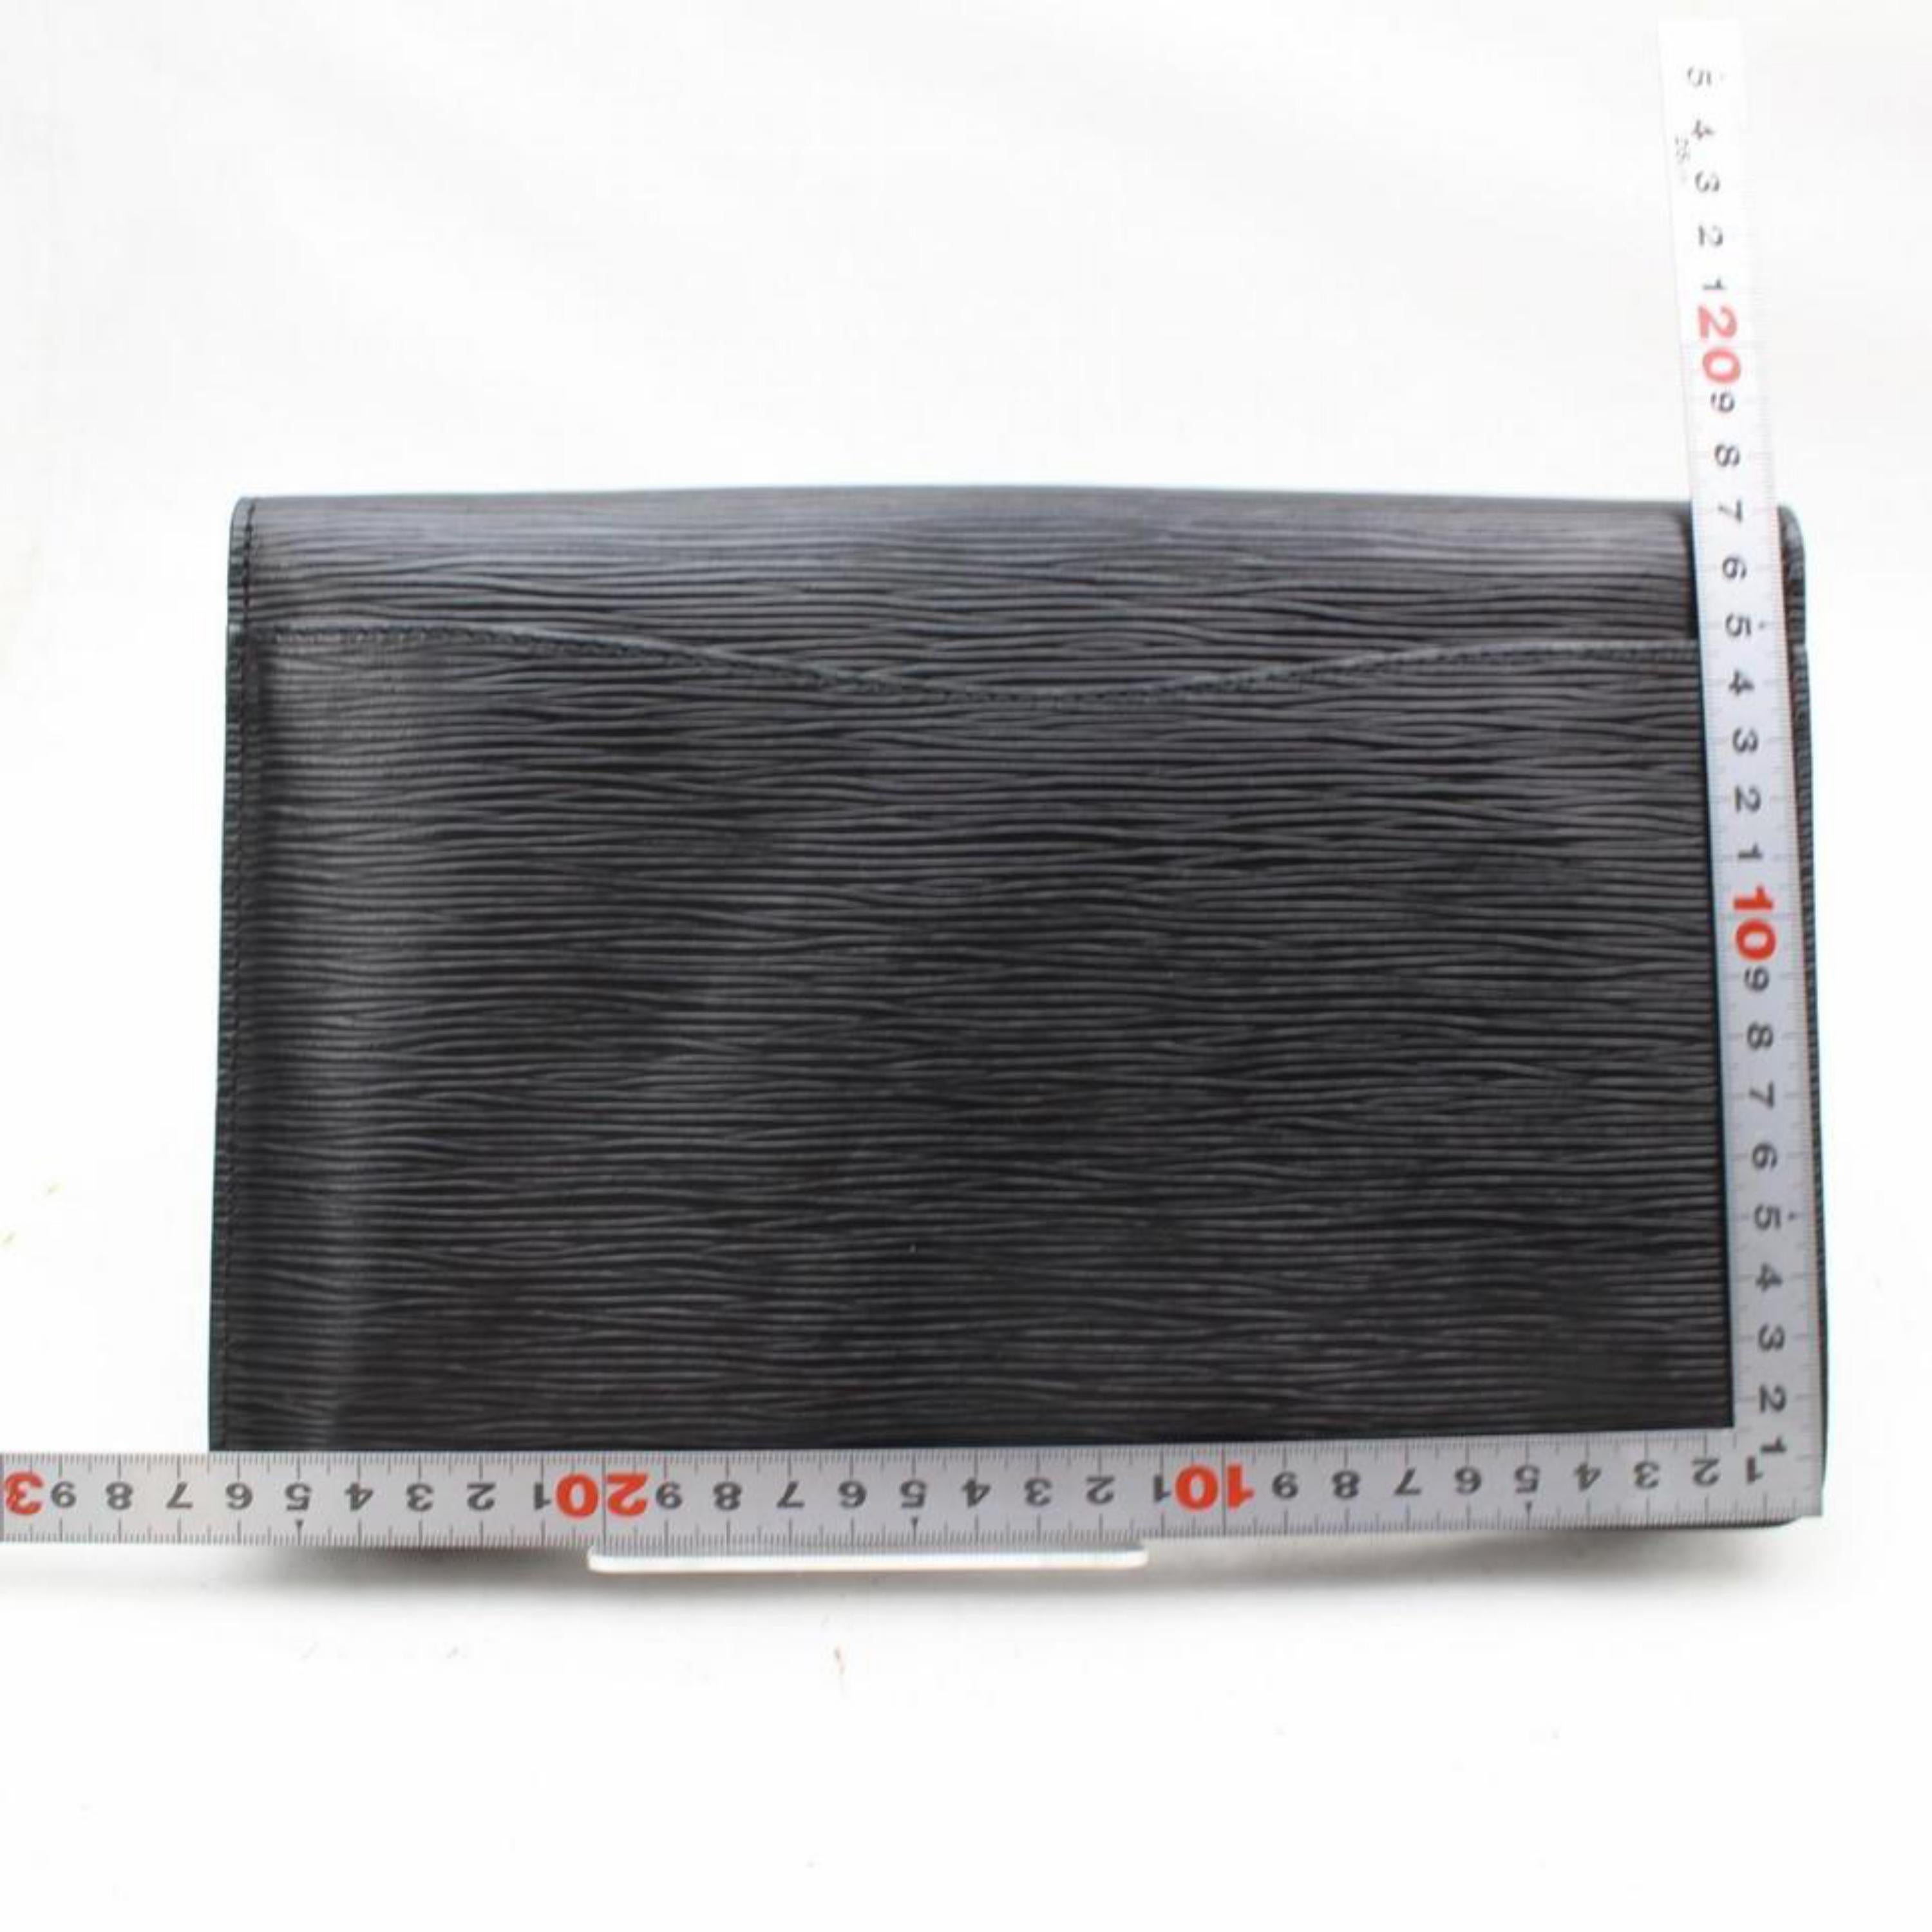 Louis Vuitton Montaigne Noir Envelope 869581 Black Leather Clutch For Sale 2